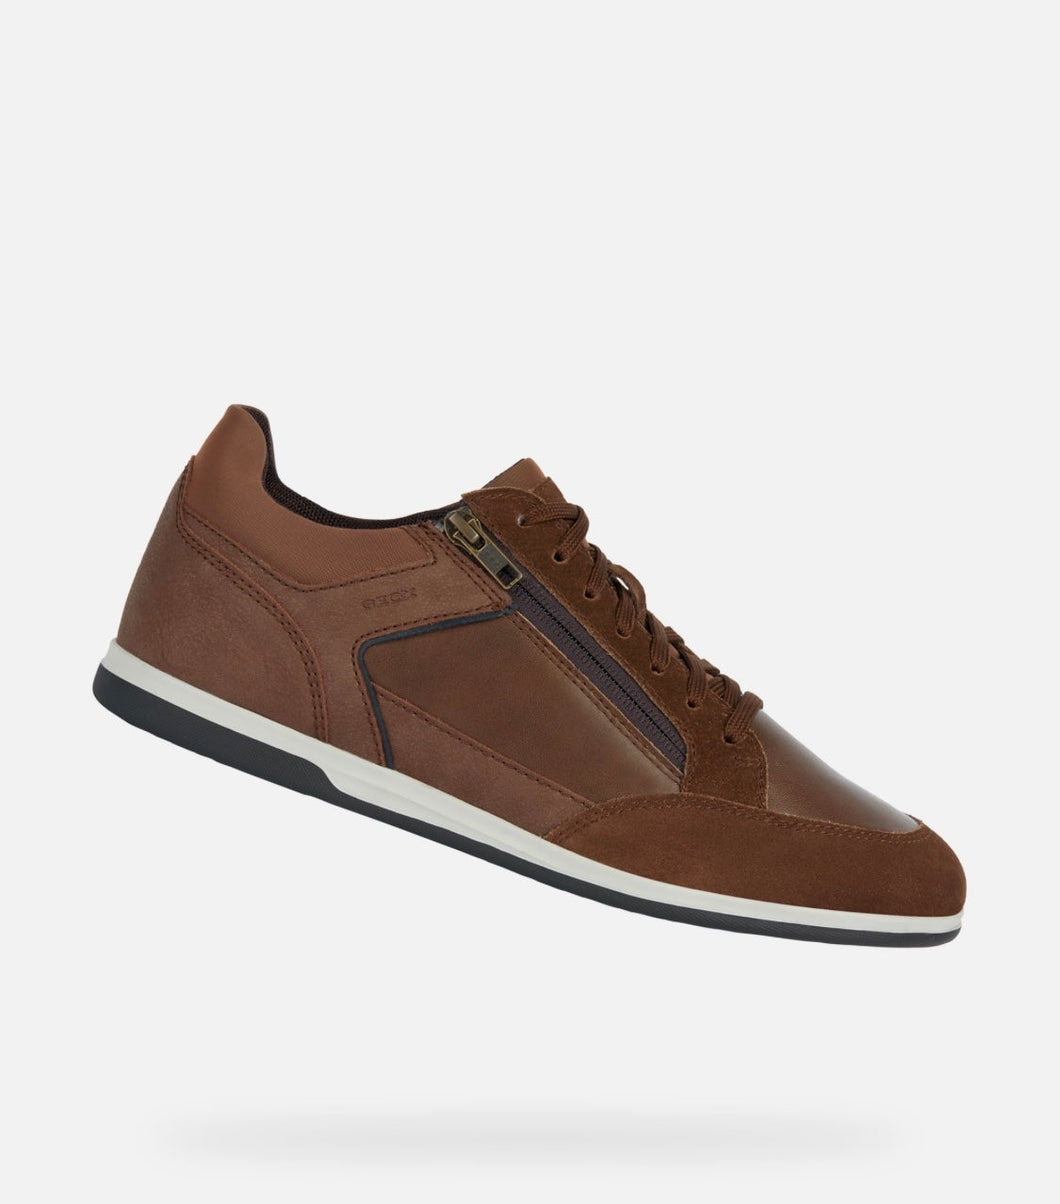 New Geox Brown Zip Up Sneaker